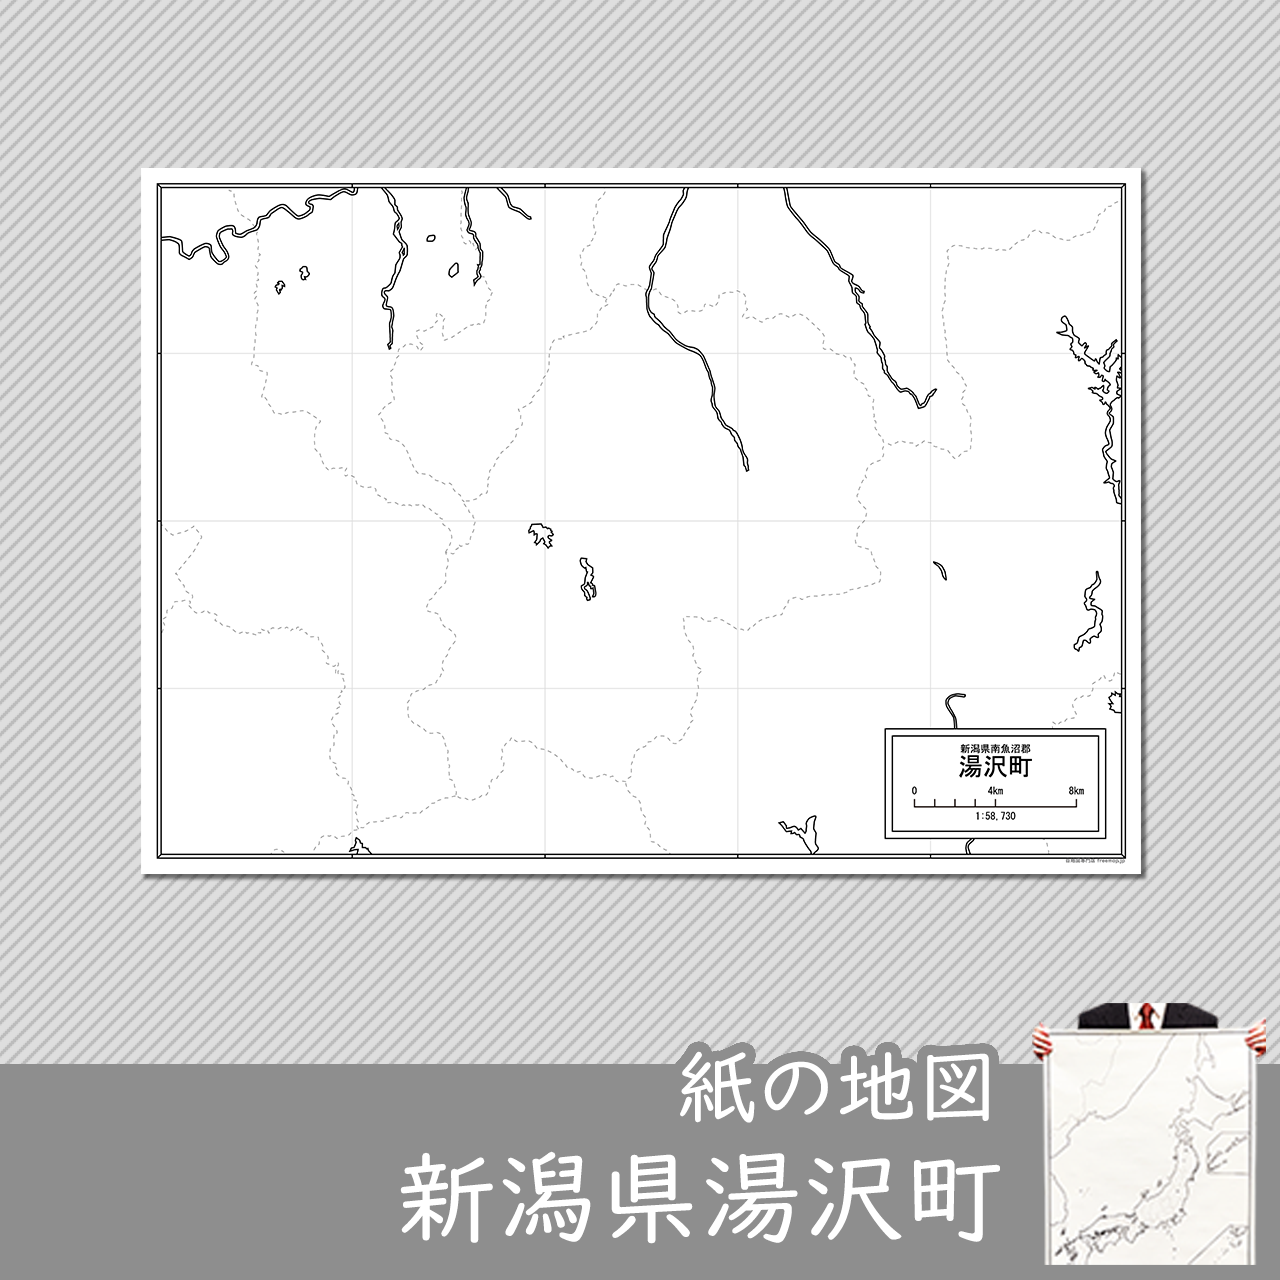 湯沢市の紙の白地図